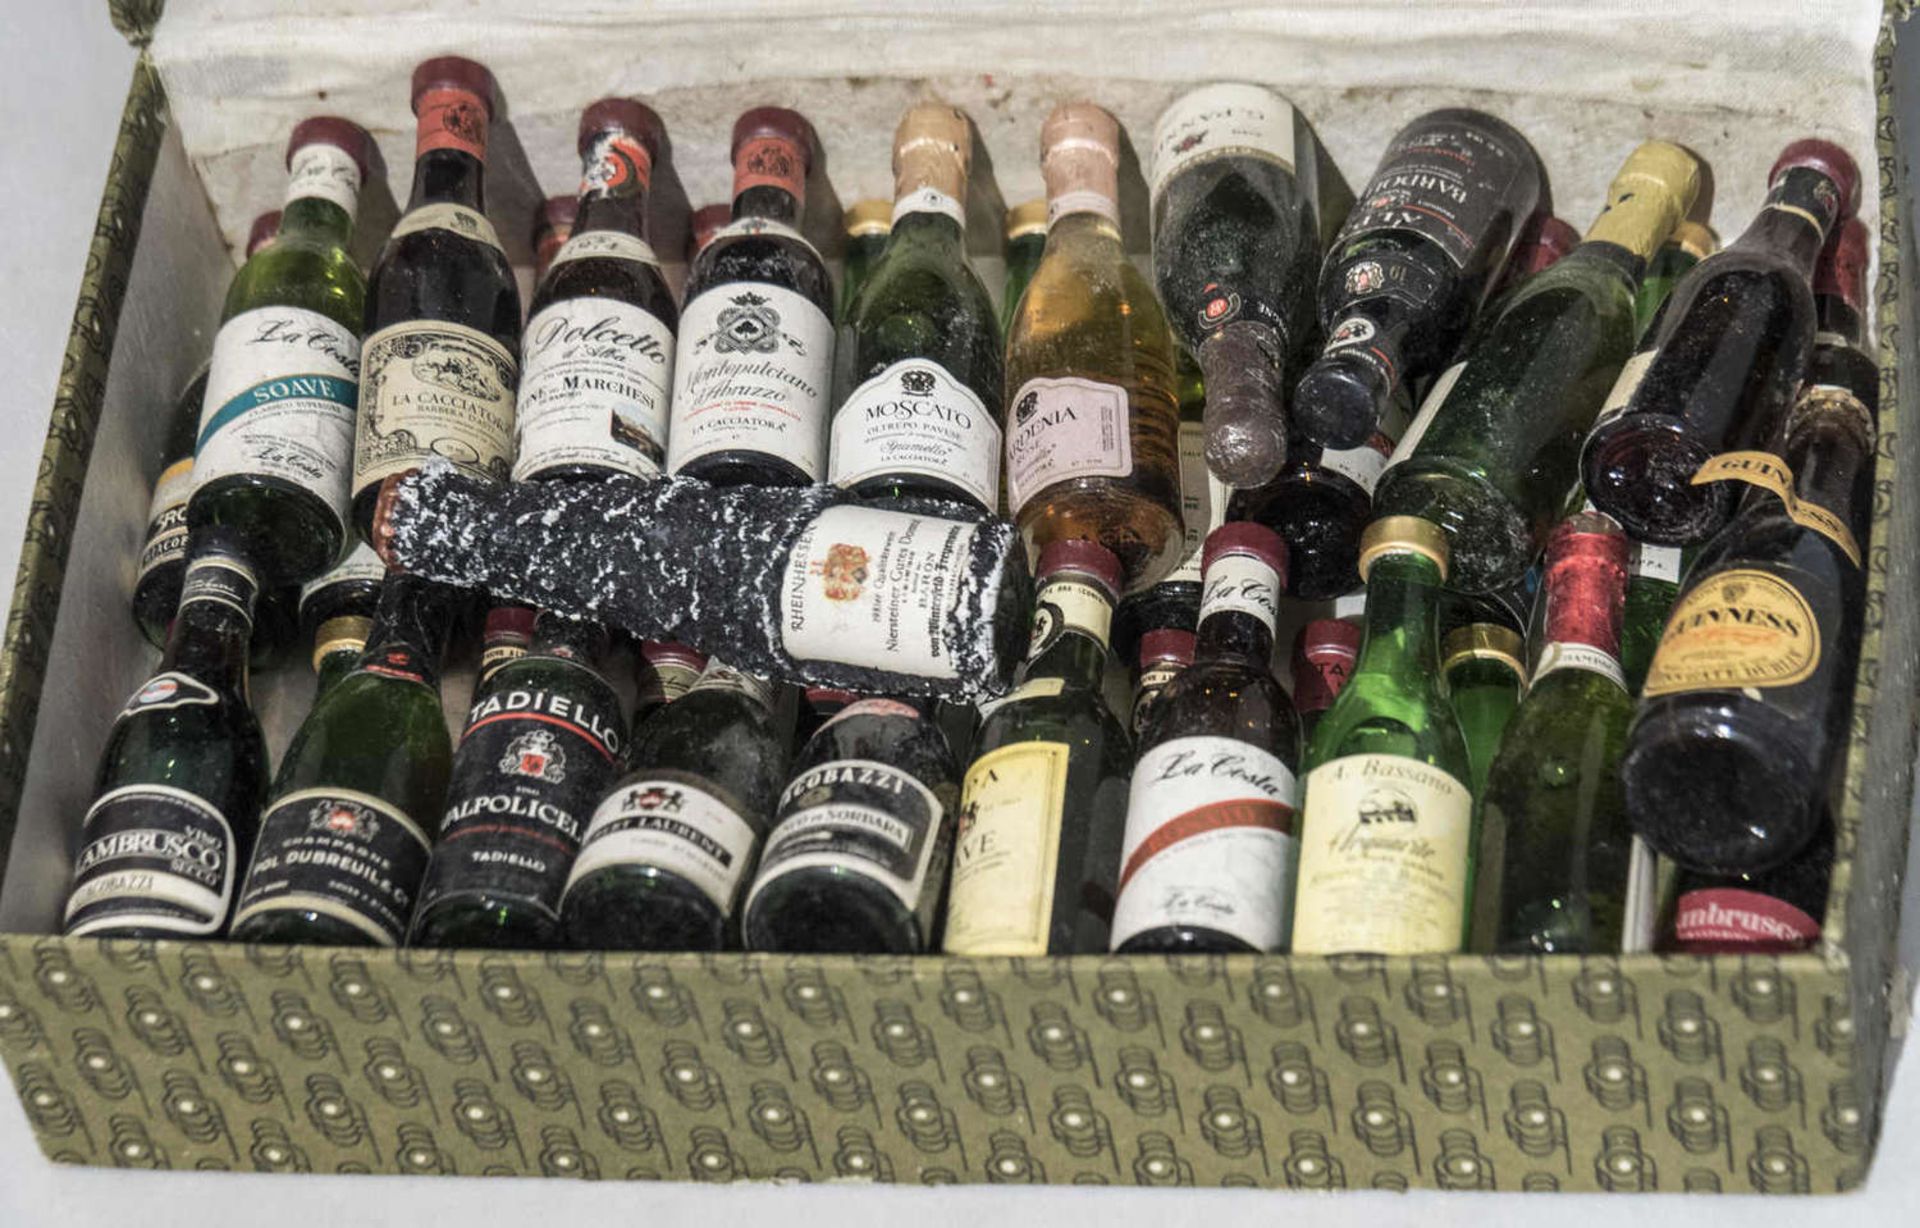 Großes Lot älterer gefüllte Miniaturflaschen aus Glas, meist italienische Weine. Außergewöhnliches